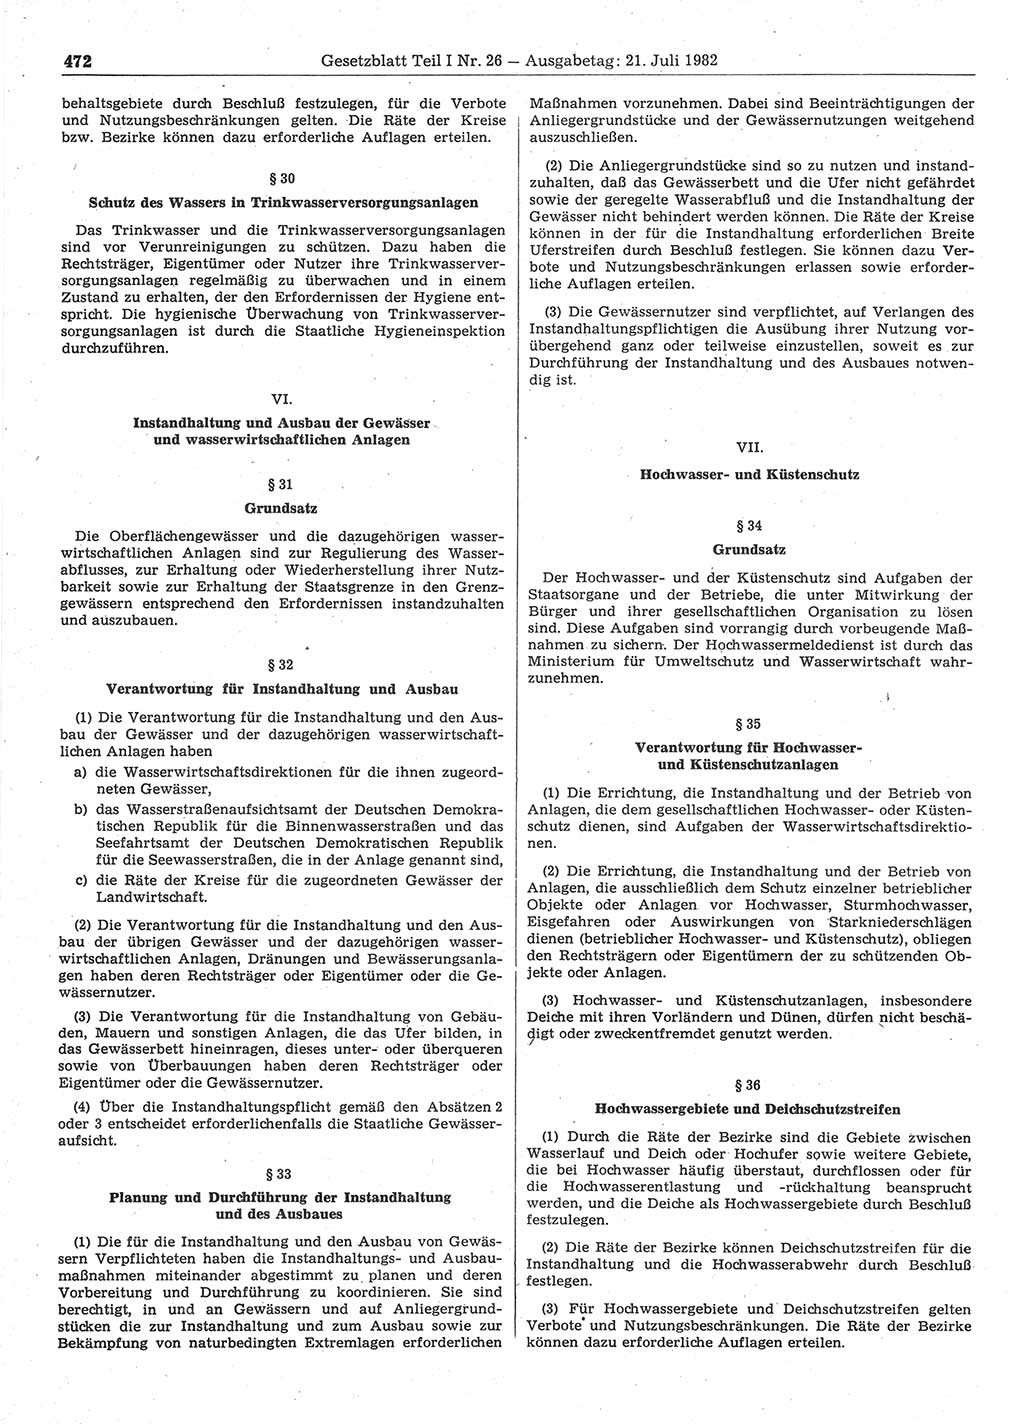 Gesetzblatt (GBl.) der Deutschen Demokratischen Republik (DDR) Teil Ⅰ 1982, Seite 472 (GBl. DDR Ⅰ 1982, S. 472)